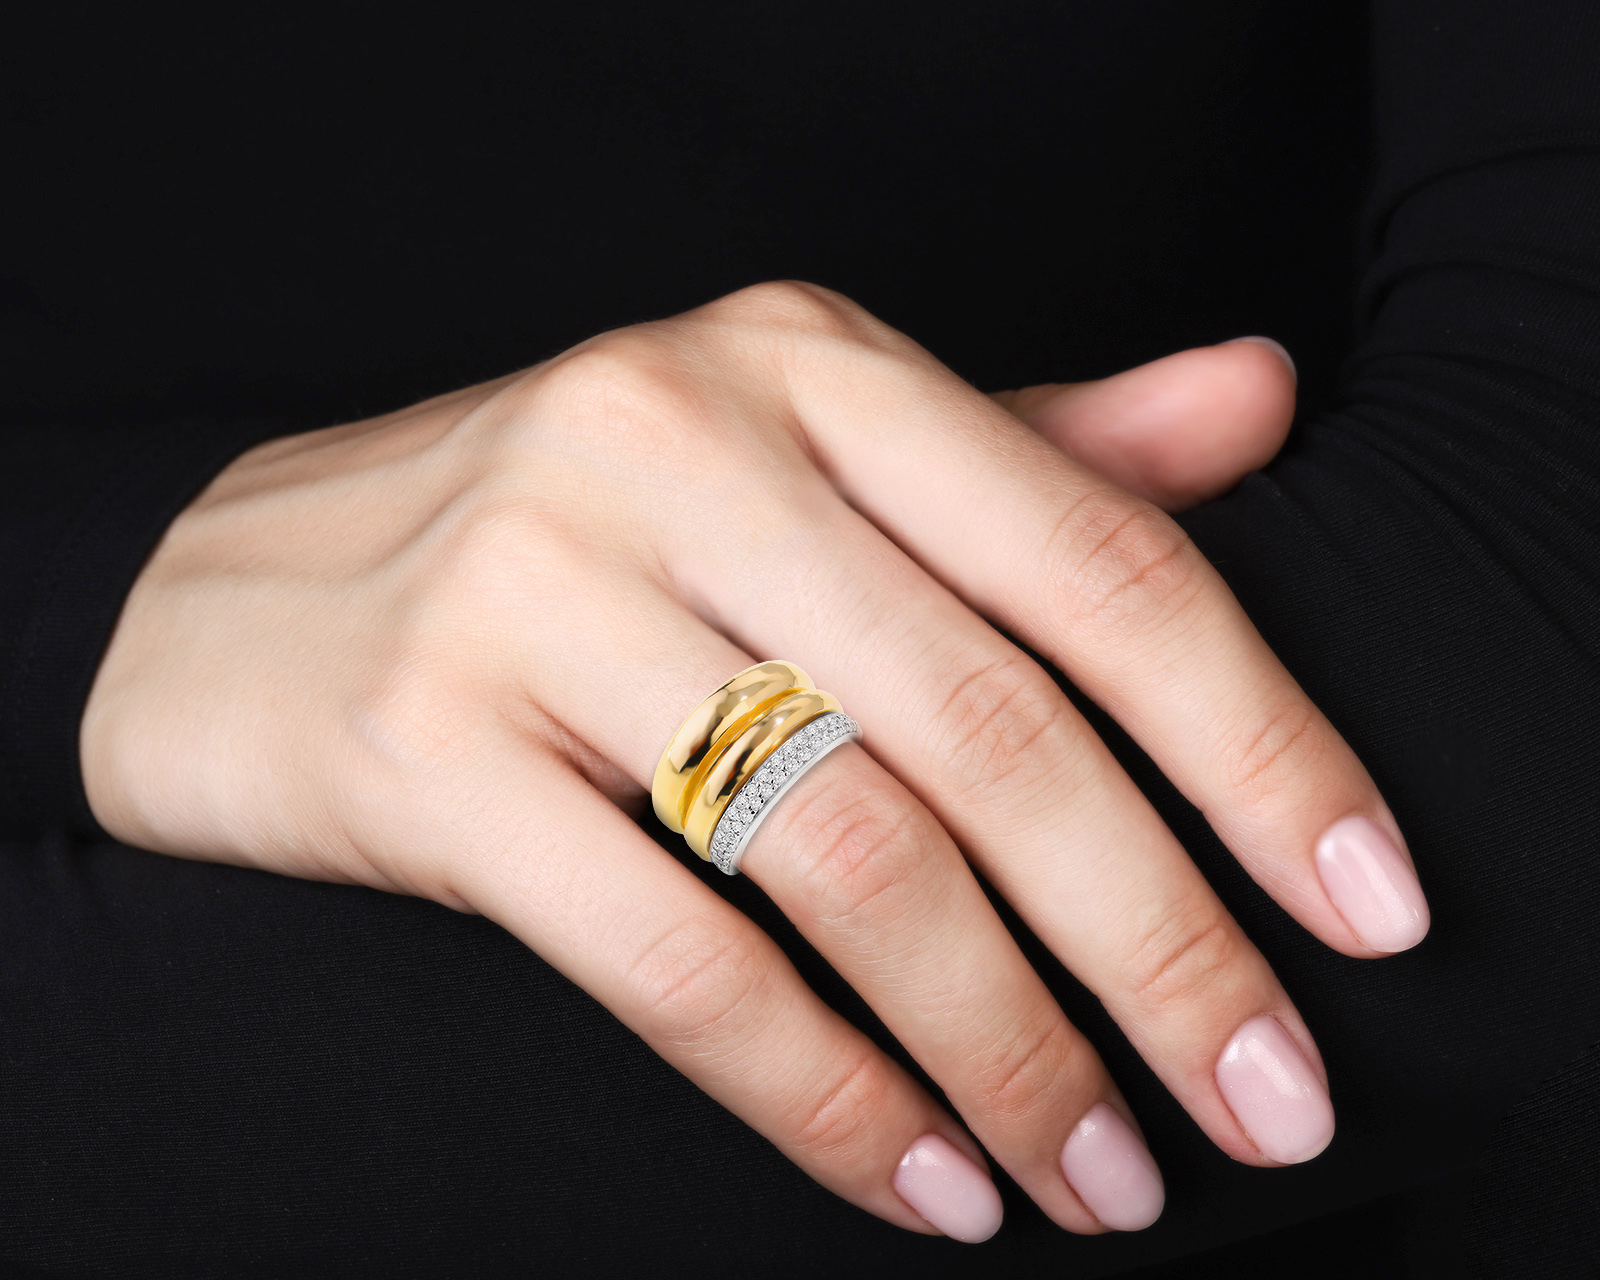 Оригинальное золотое кольцо с бриллиантами 0.45ct H.Stern